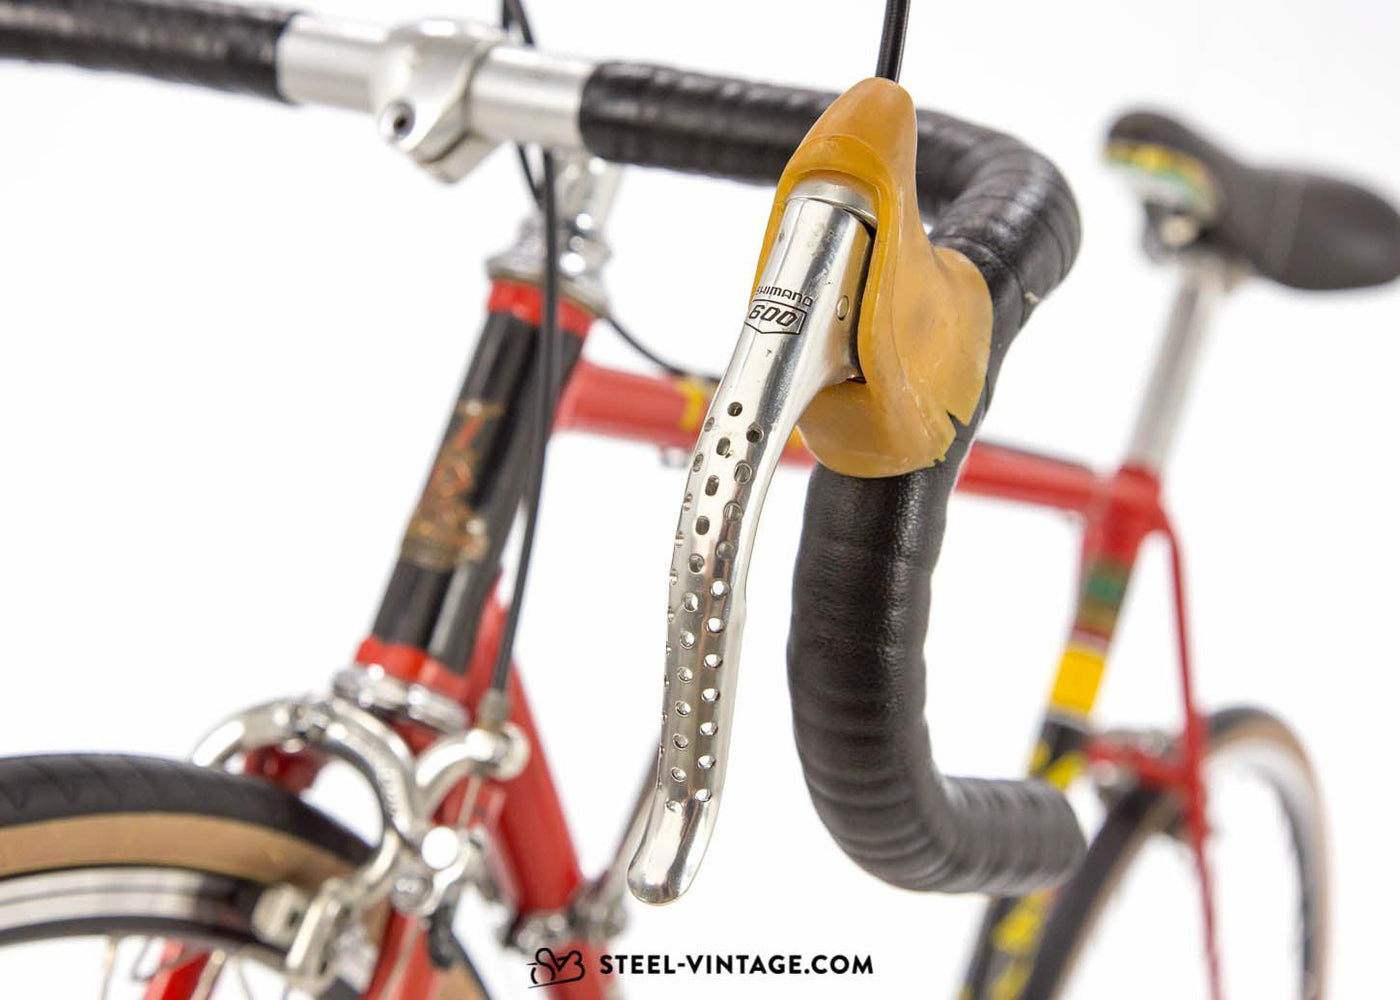 Raleigh Record 531 Vintage Racing Bicycle - Steel Vintage Bikes